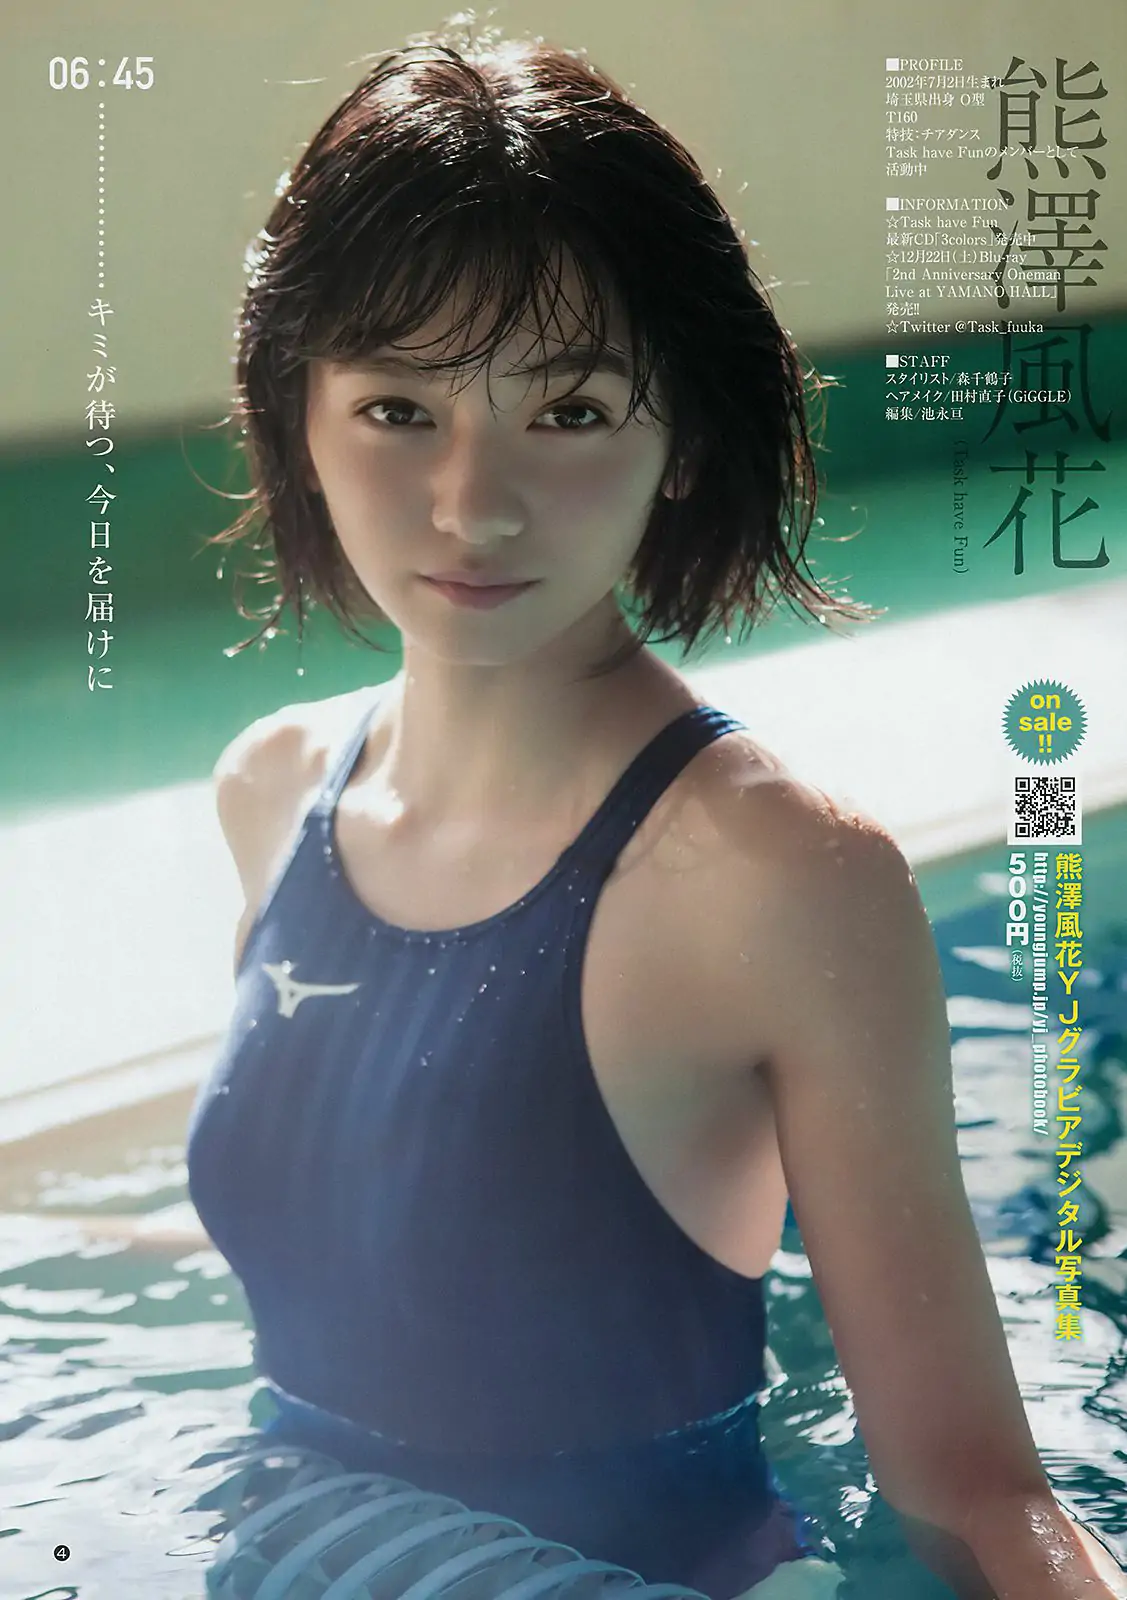 えなこ 熊澤風花 [Weekly Young Jump] 2019年No.02 写真杂志